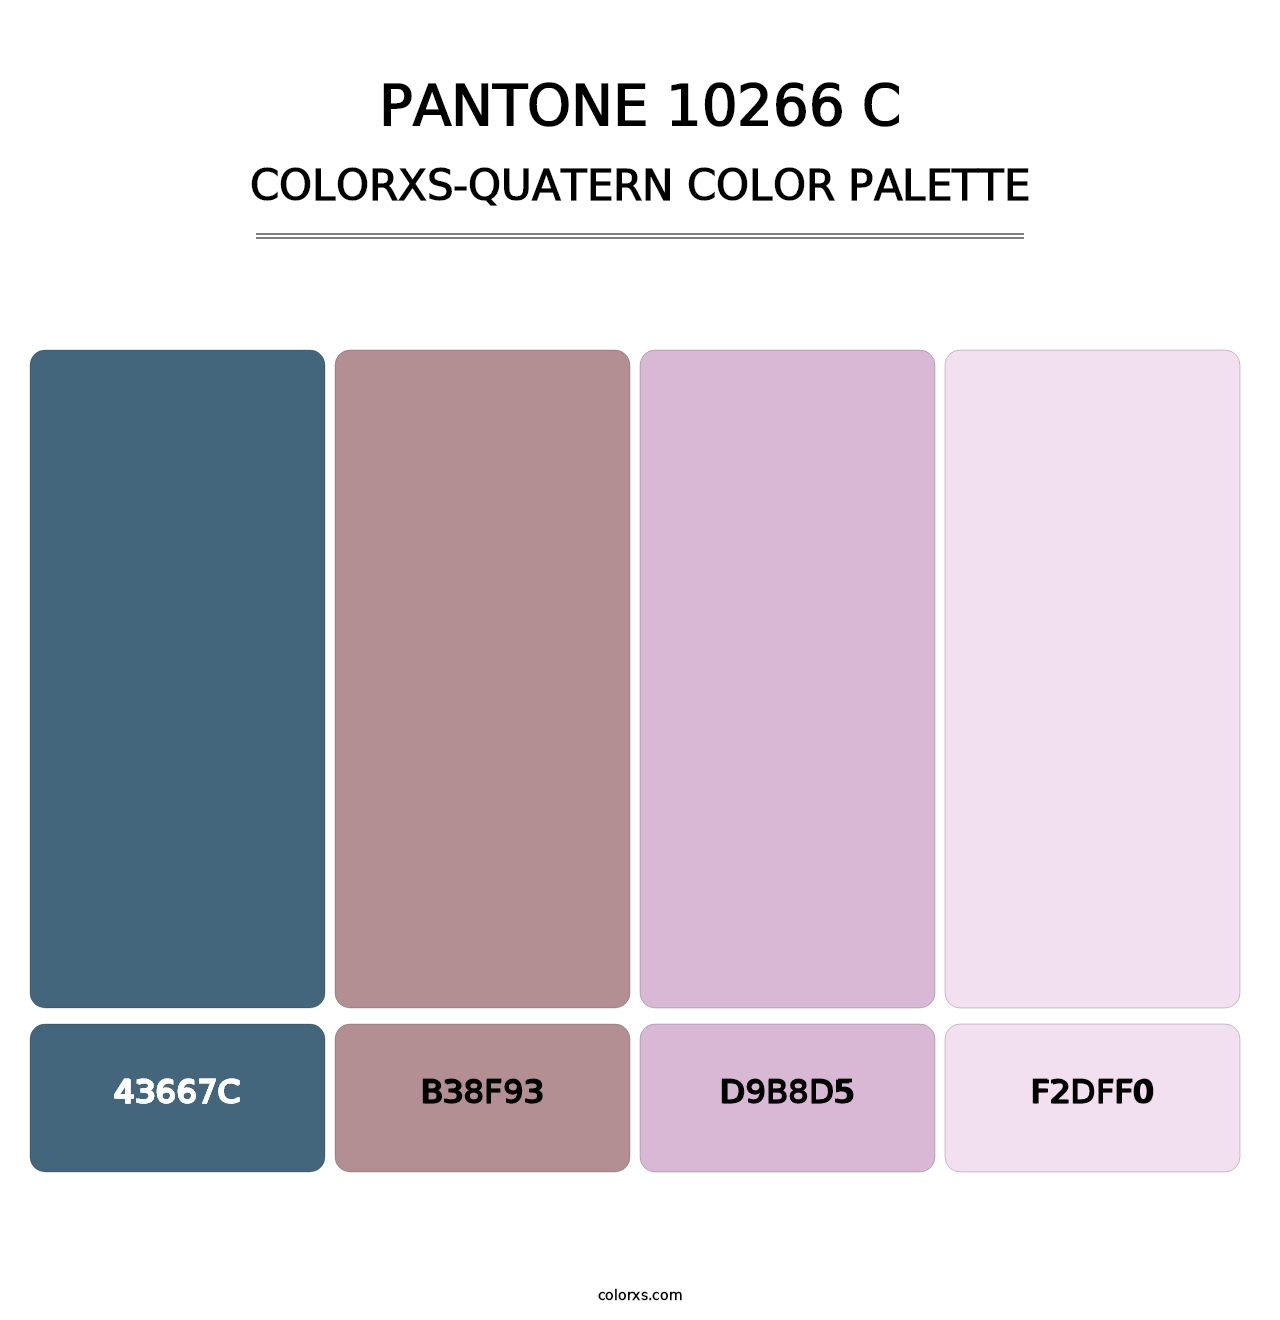 PANTONE 10266 C - Colorxs Quatern Palette